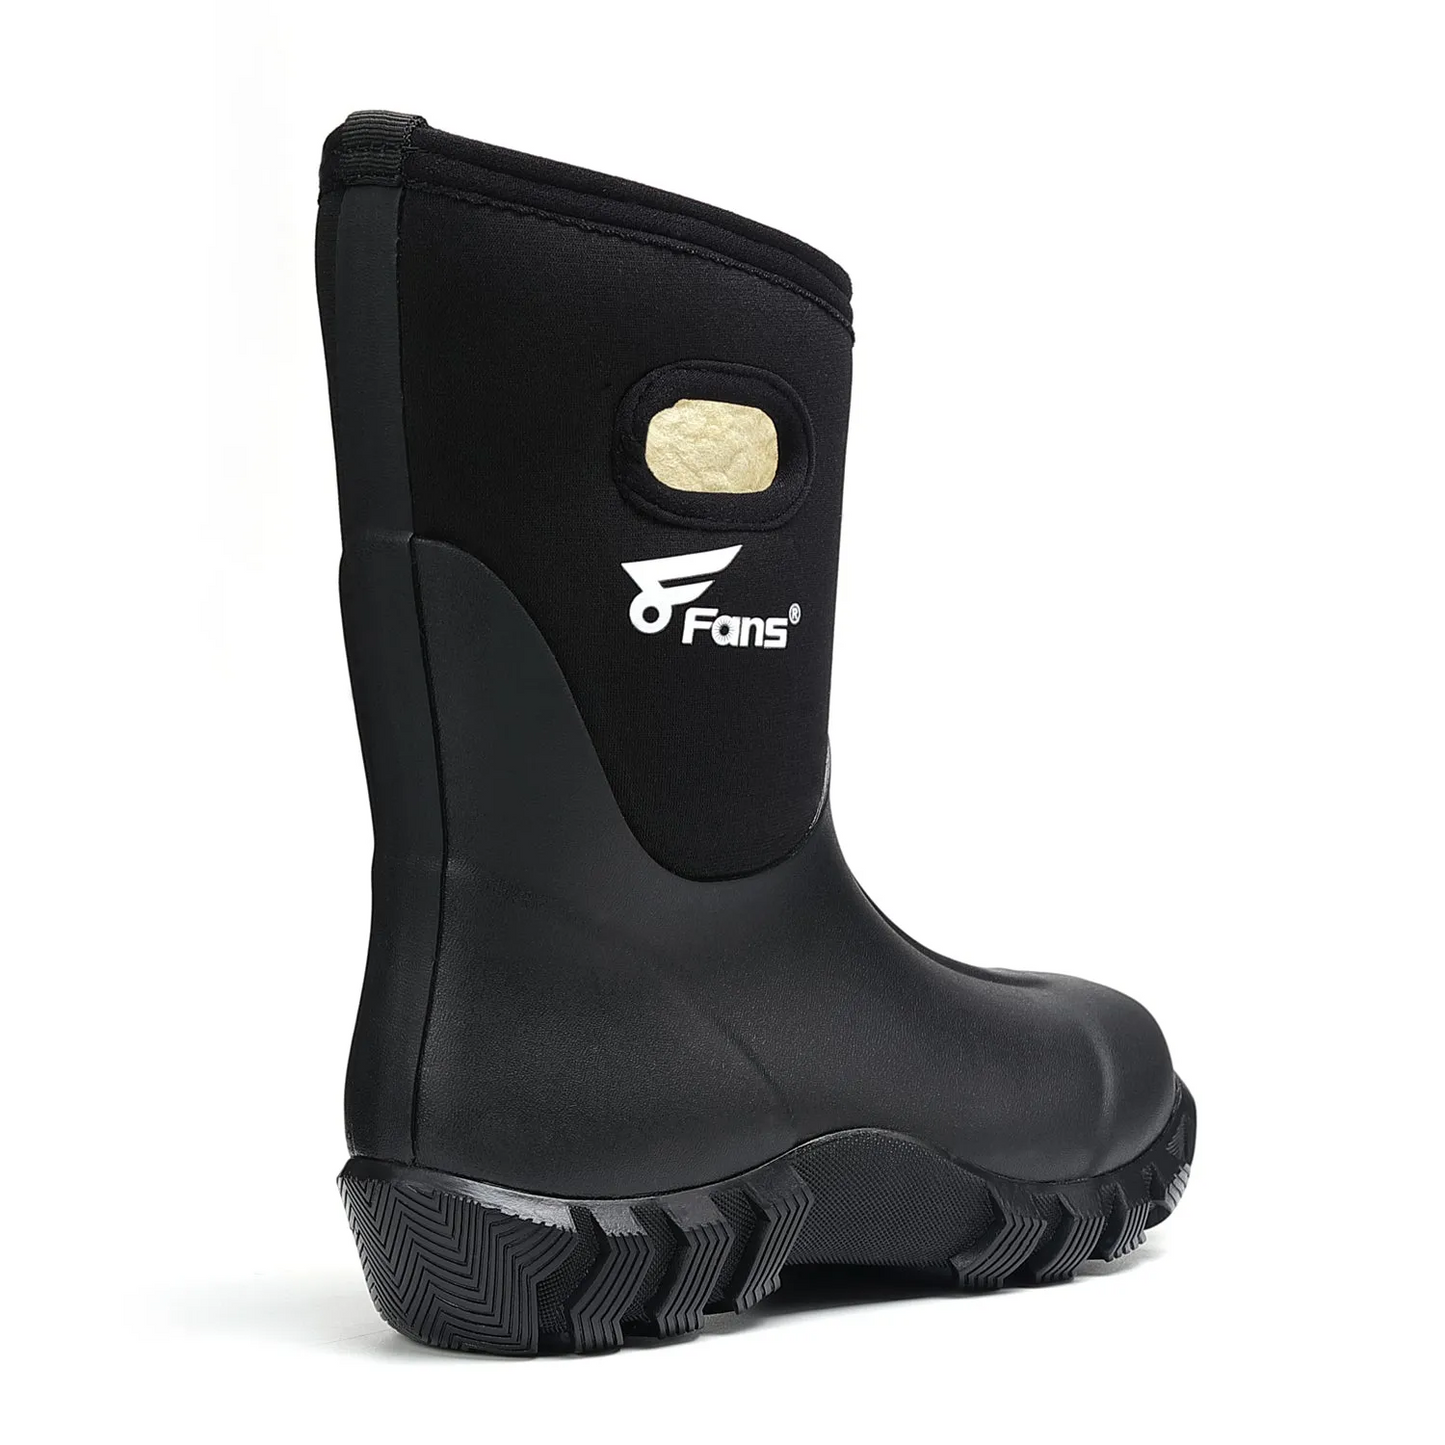 Waterproof Rubber Rain Boots for Kids